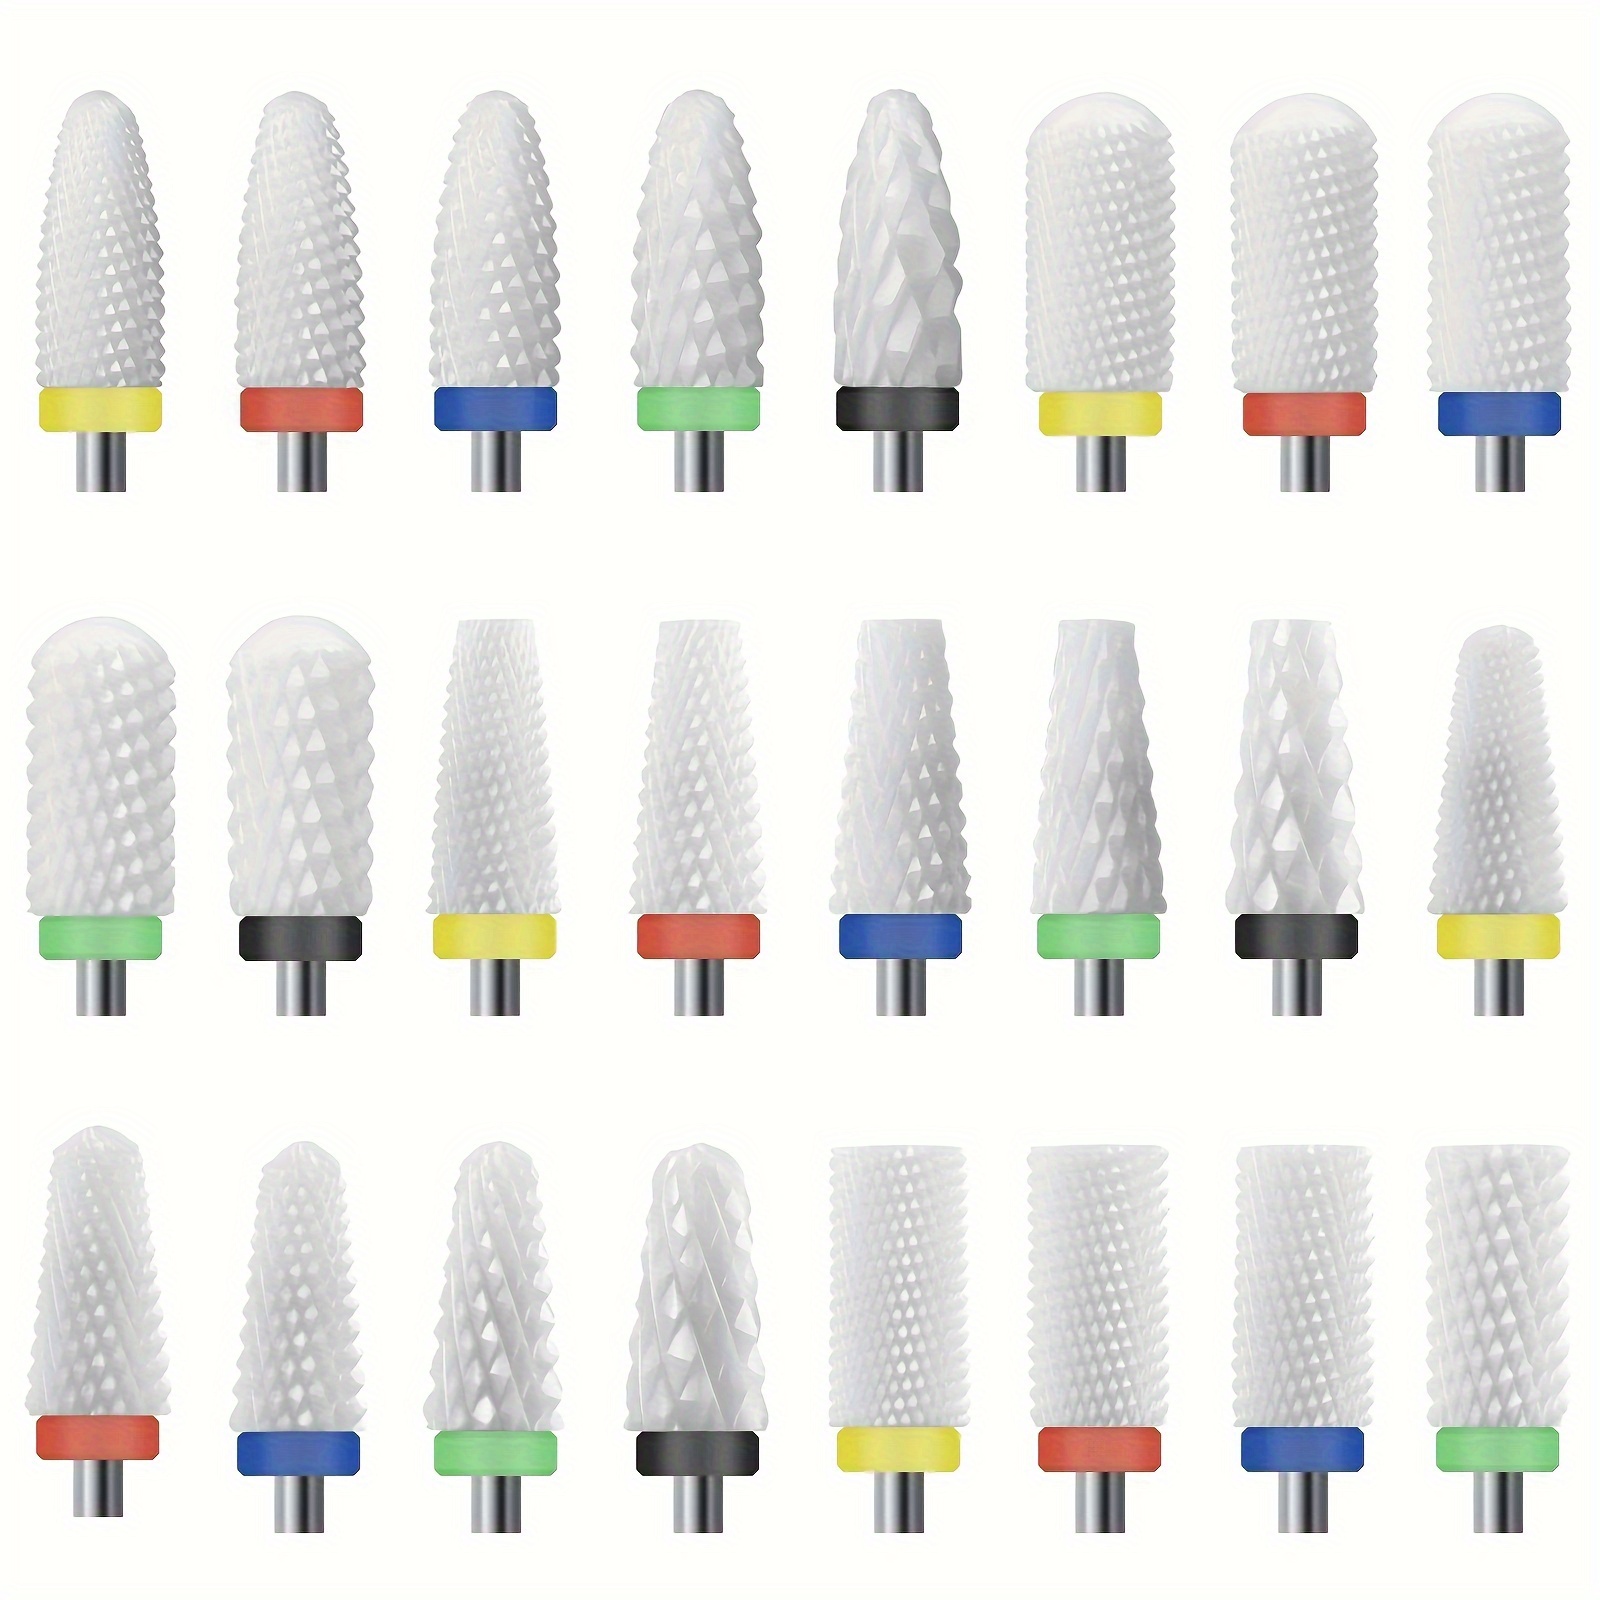 

10pcs Ceramic Nail Drill Bits Set Milling Cutter For Electric Manicure Bit Flame Corn Files Pedicure Machine Polish Accessories